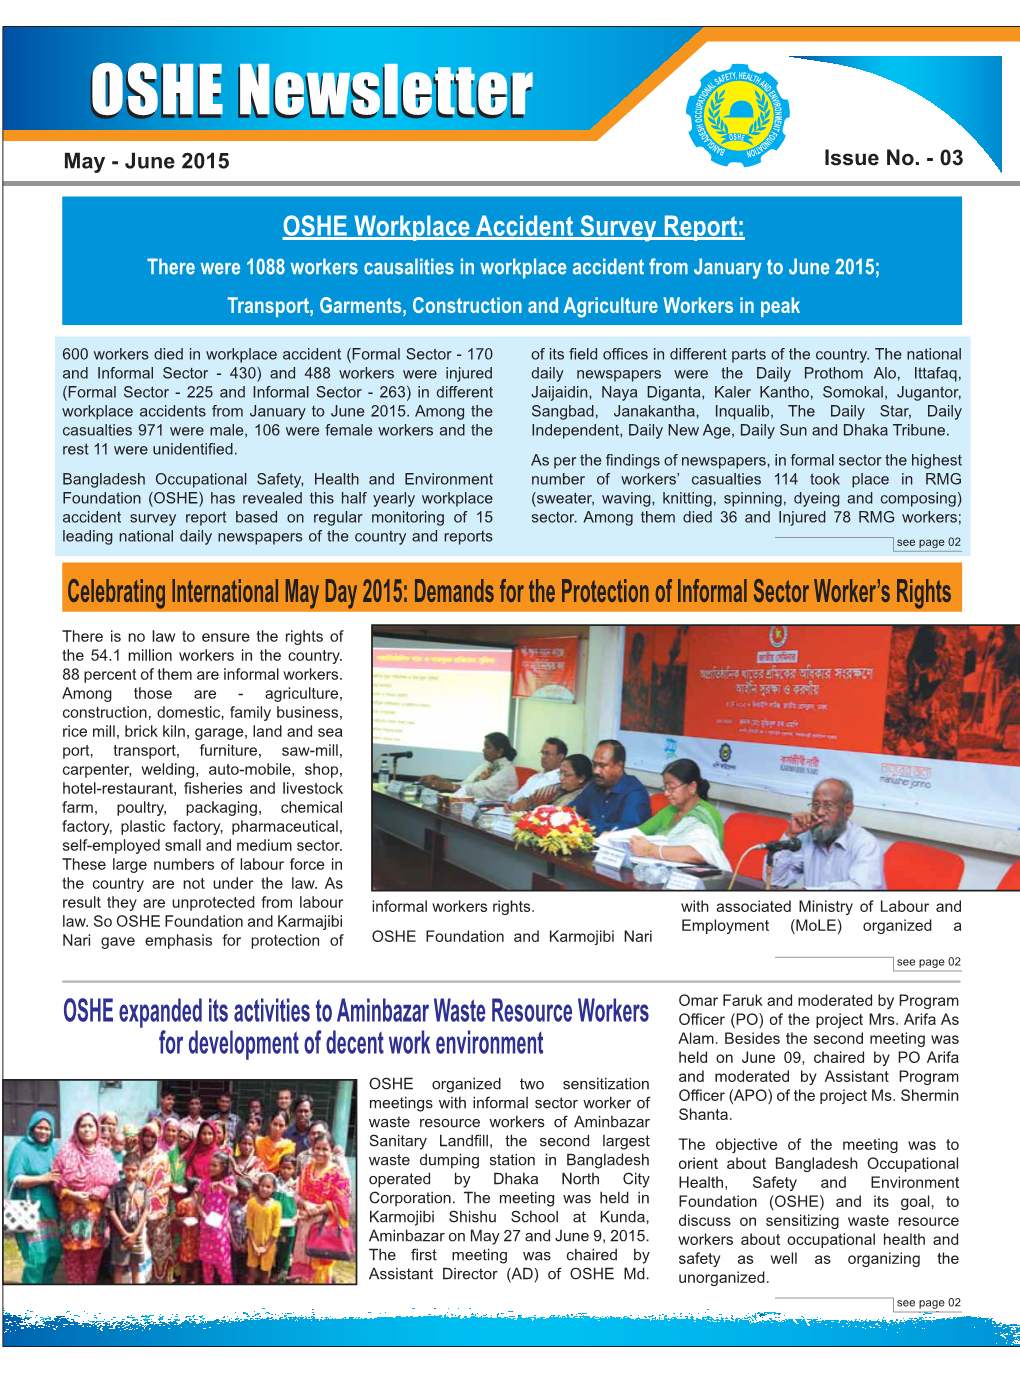 OSHE Newsletter No. 3 May-June 2015